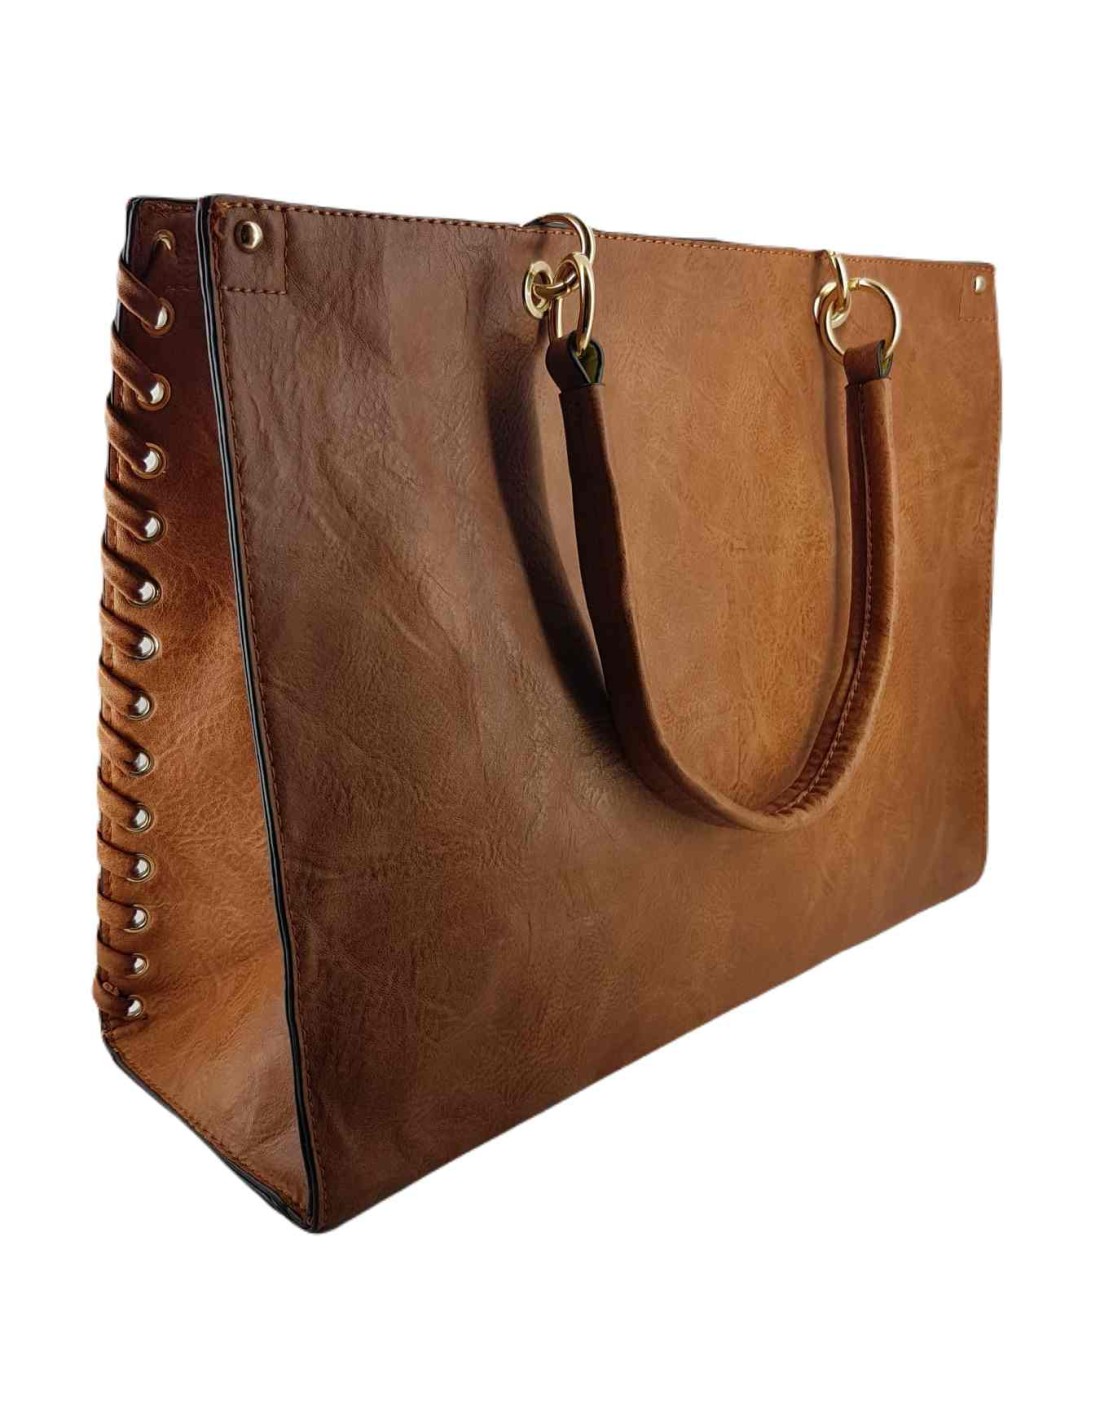 Bolso mujer shopping bag marrón grande París